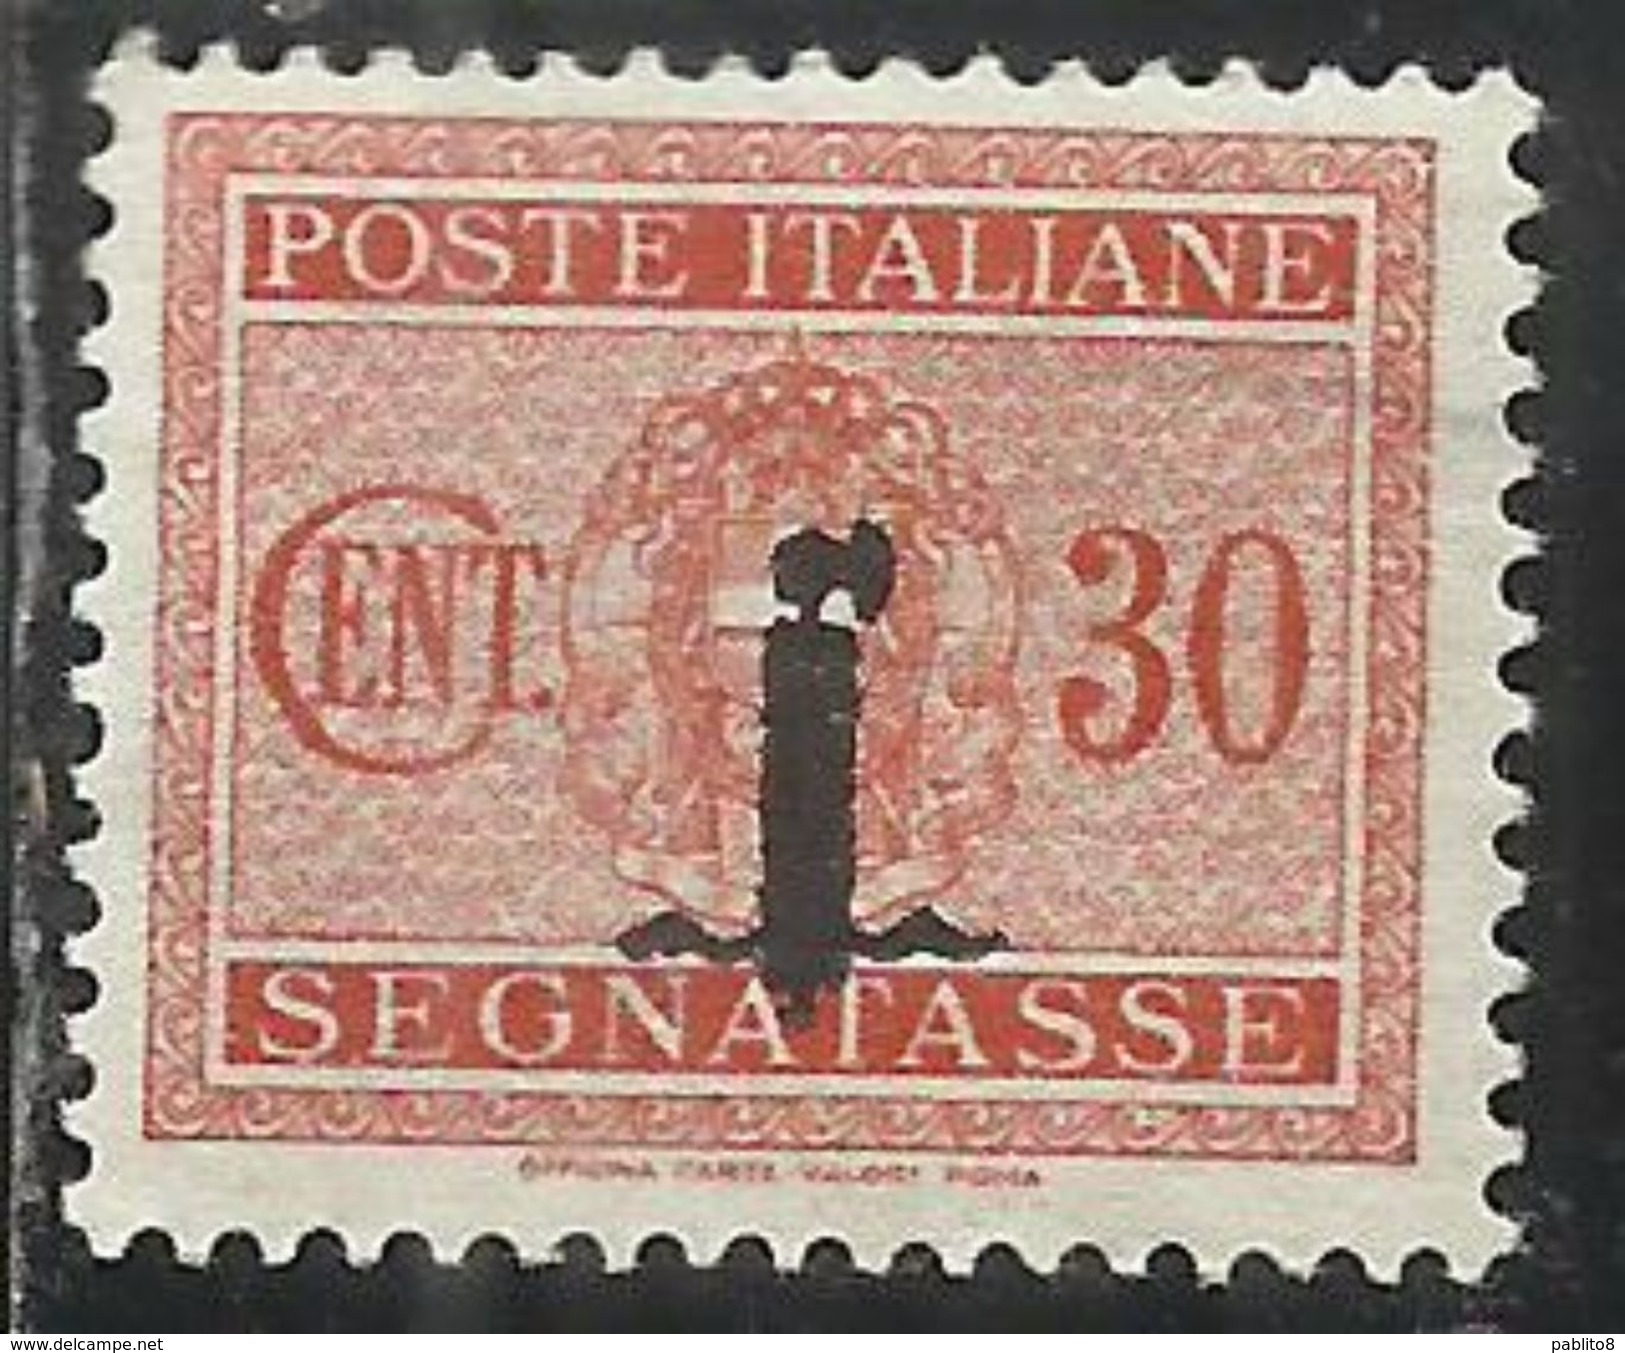 ITALIA REGNO REPUBBLICA SOCIALE RSI 1944 SEGNATASSE POSTAGE DUE PICCOLO FASCIO FASCIETTO CENT. 30 TASSE  MLH - Portomarken